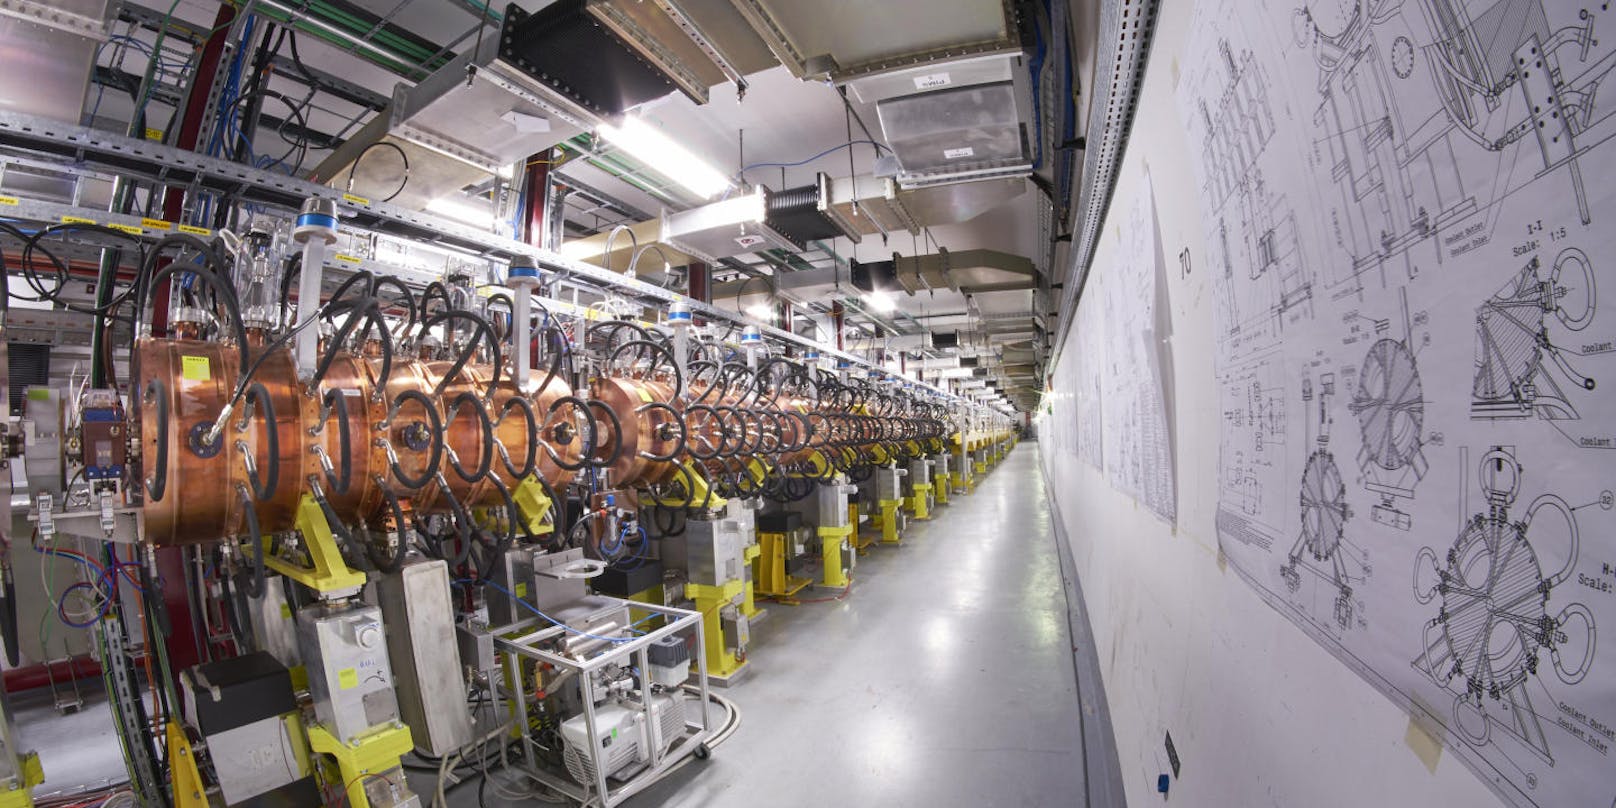 Bis 2021 soll der Protonenstrahl im LHC noch höhere Energien erreichen und damit neue Erkenntnisse über das Higgs-Teilchen und vielleicht auch Hinweise auf eine neue Physik ermöglichen.